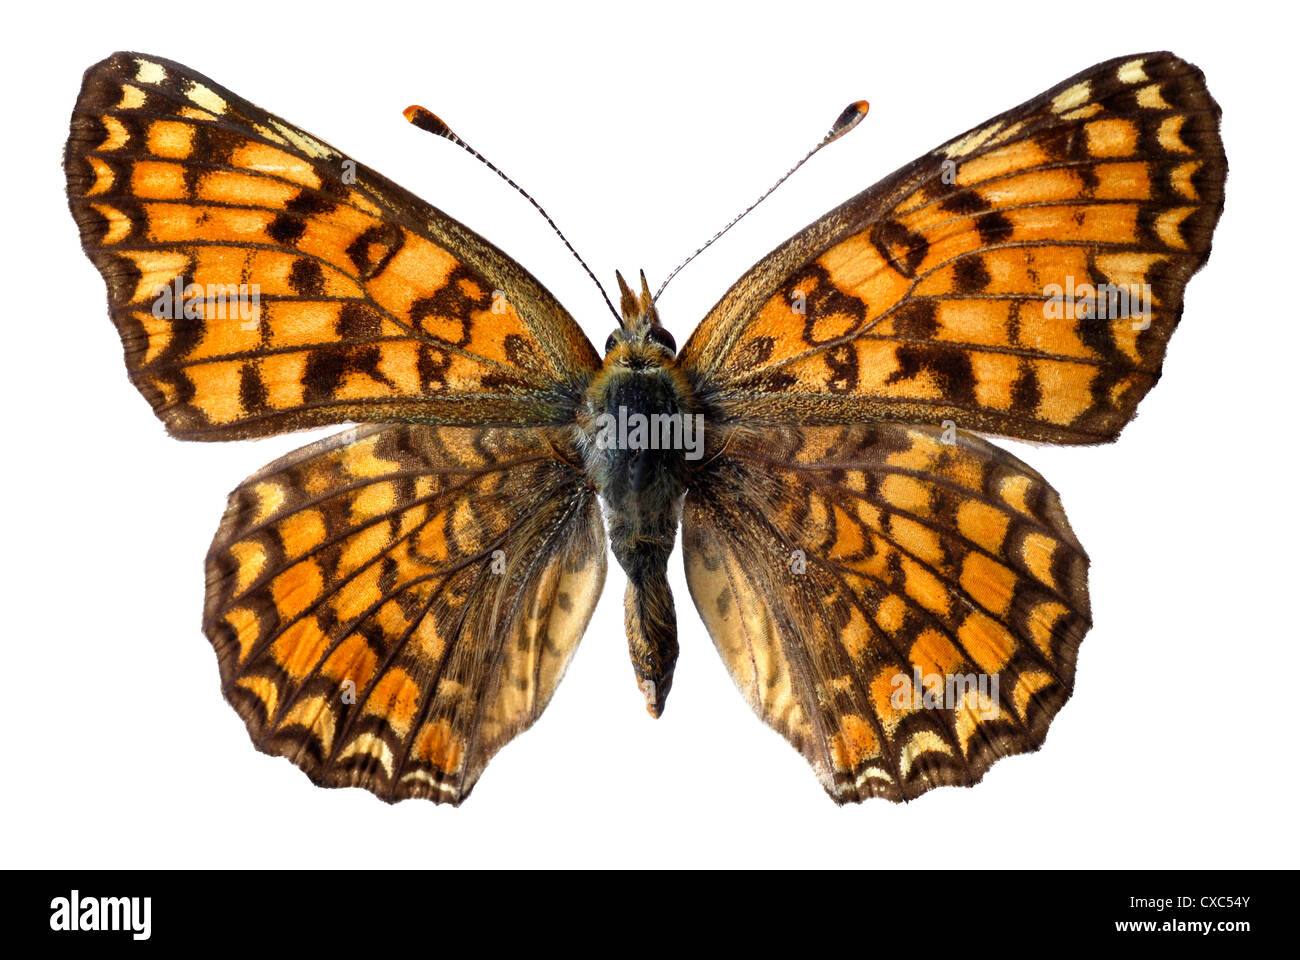 Knapweed Fritillary butterfly (Melitaea phoebe) isolated on white background Stock Photo